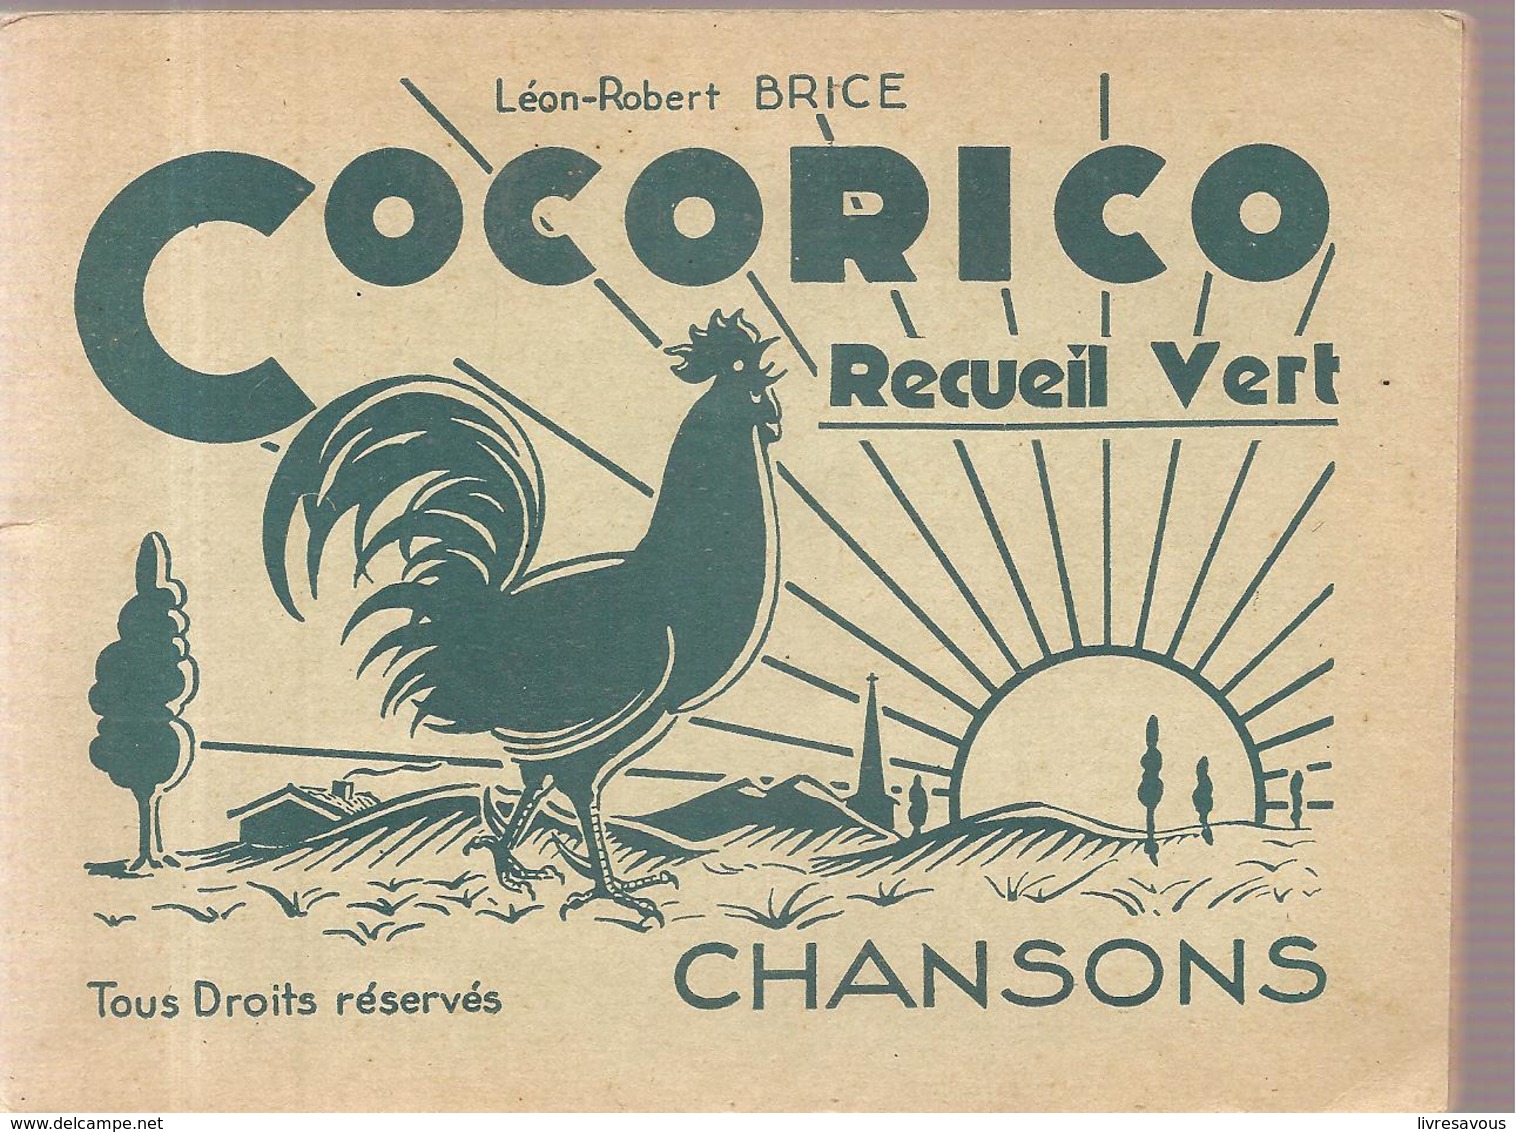 Scoutisme Cocorico Chansons Recueil Vert De Léon-Robert Brice Editions Du Chevalier (non Daté) - Scoutisme